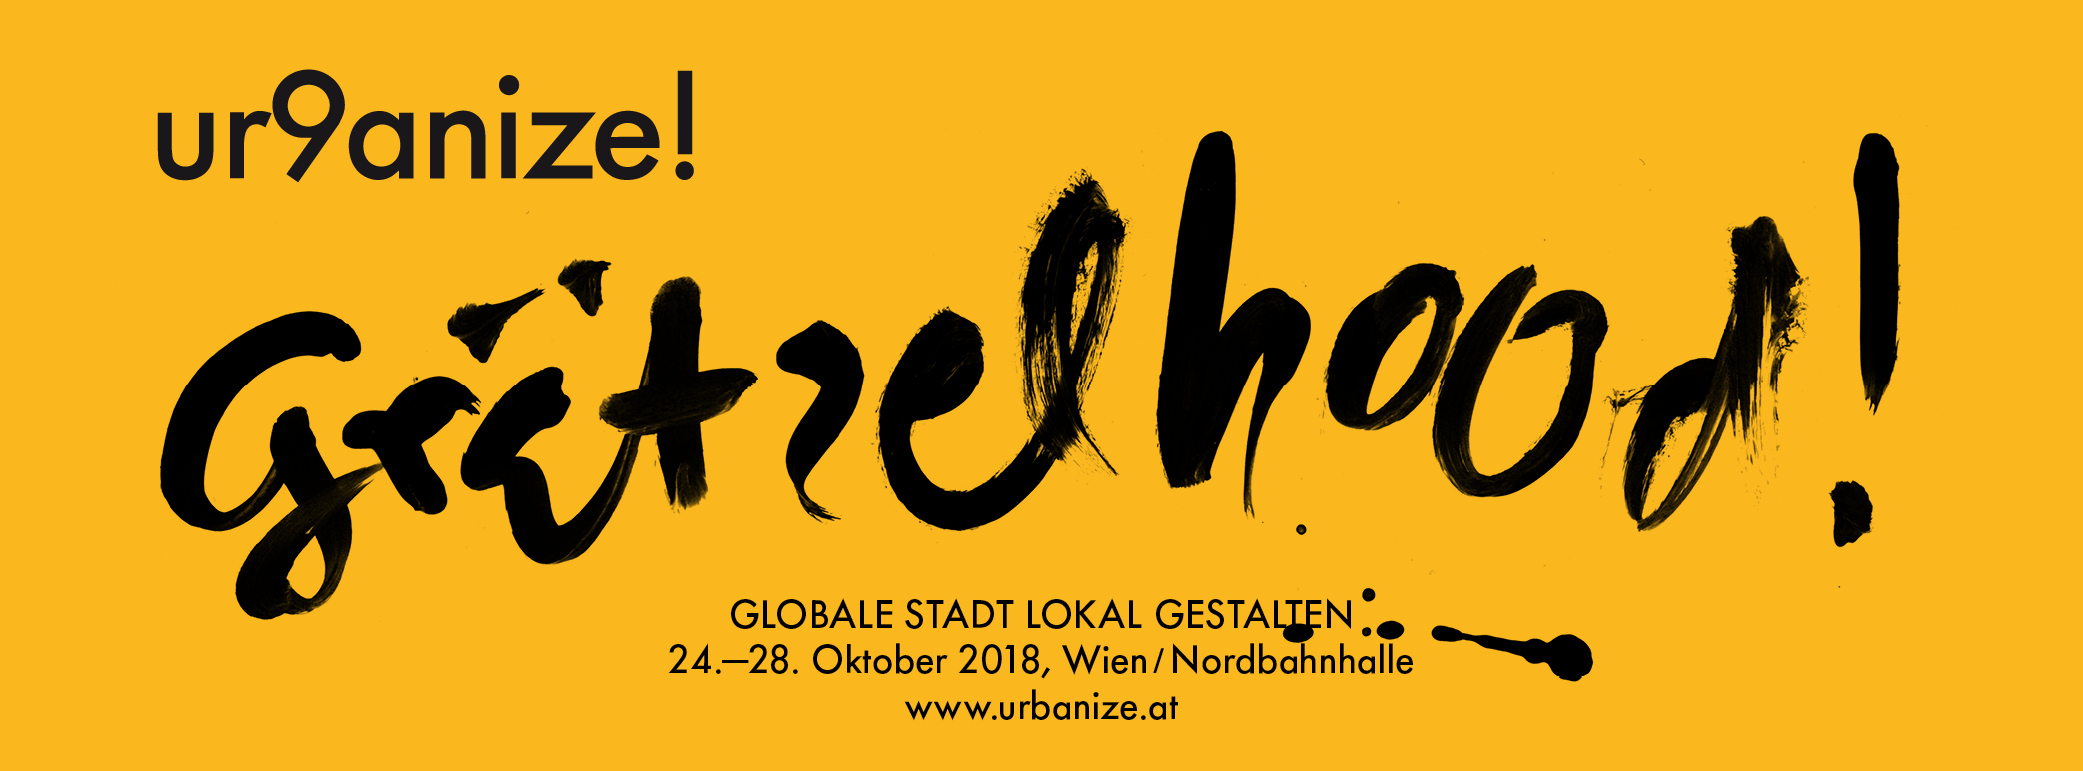 Grätzelhood - urbanize! Internationales Festival für urbane Erkundungen, 24.-28. Oktober 2018, Wien